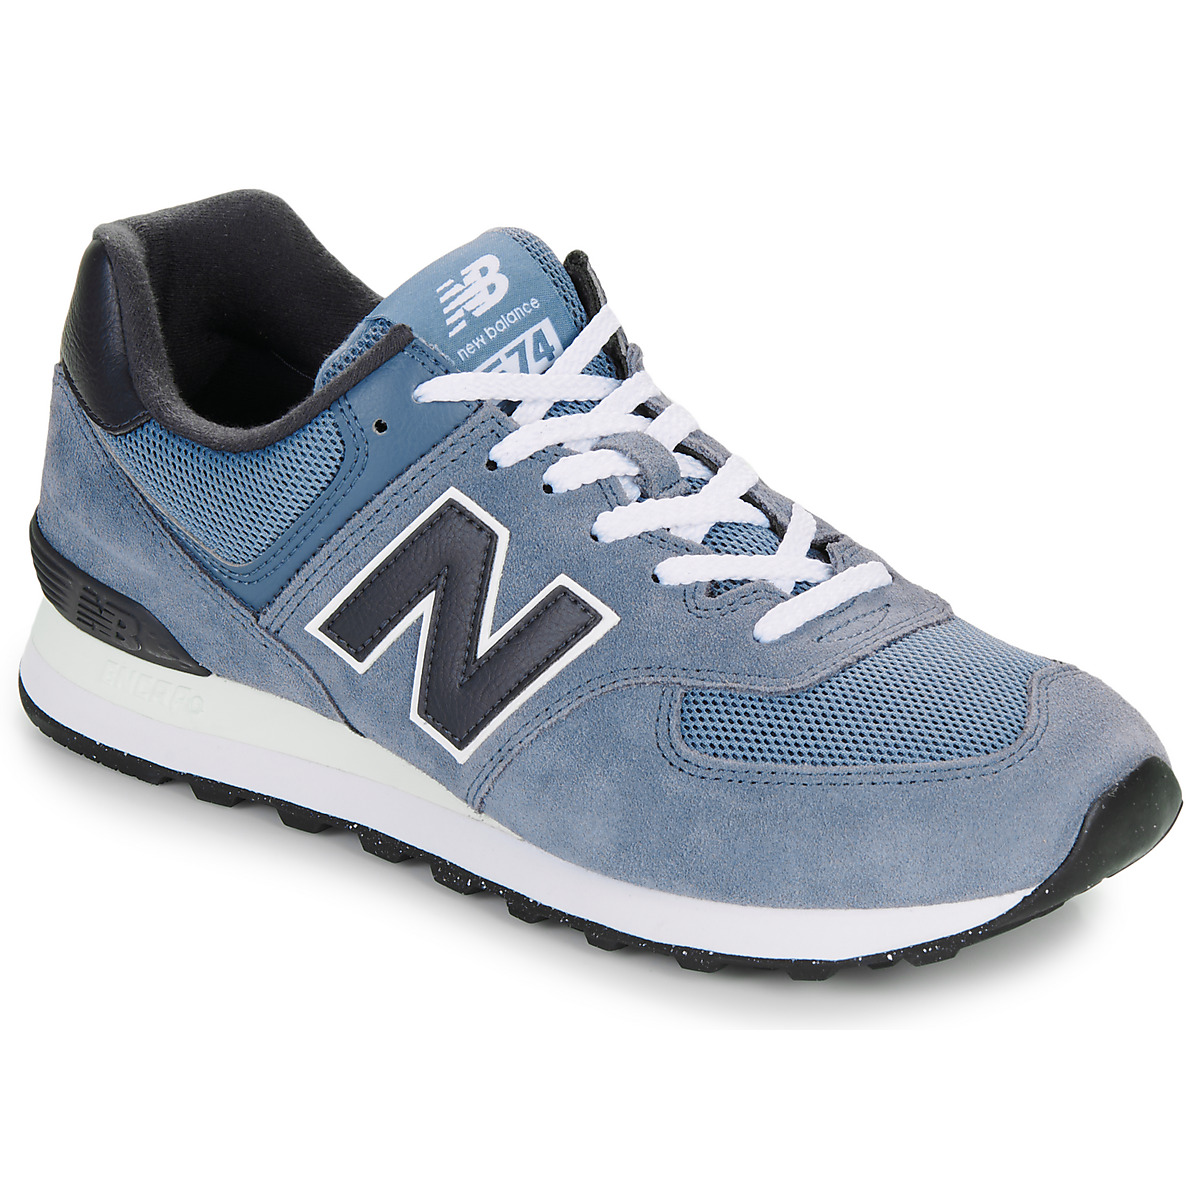 Cipők Rövid szárú edzőcipők New Balance 574 Kék